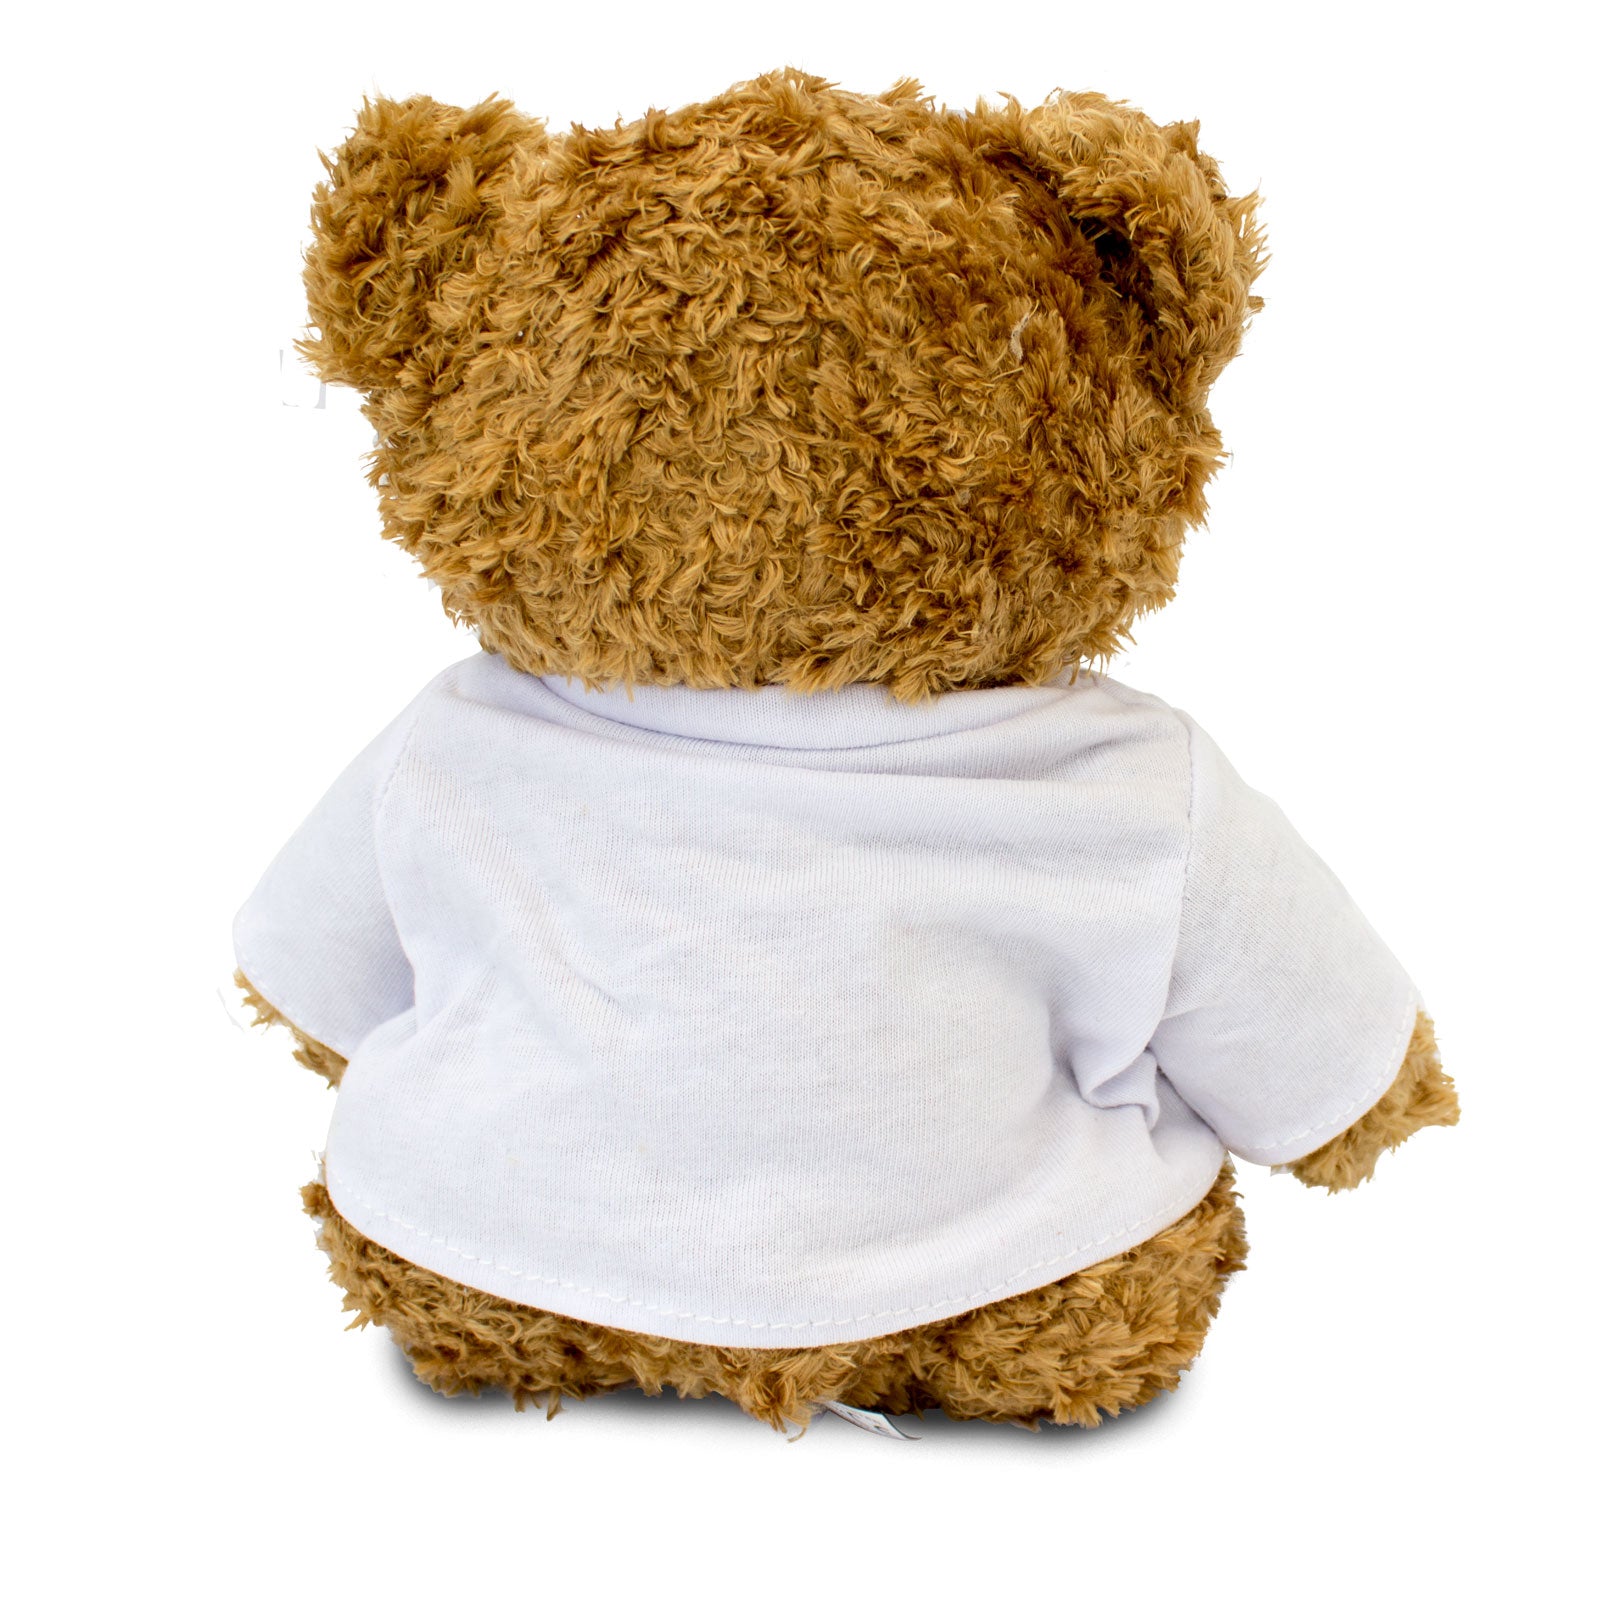 Get Well Soon Hamish - Teddy Bear